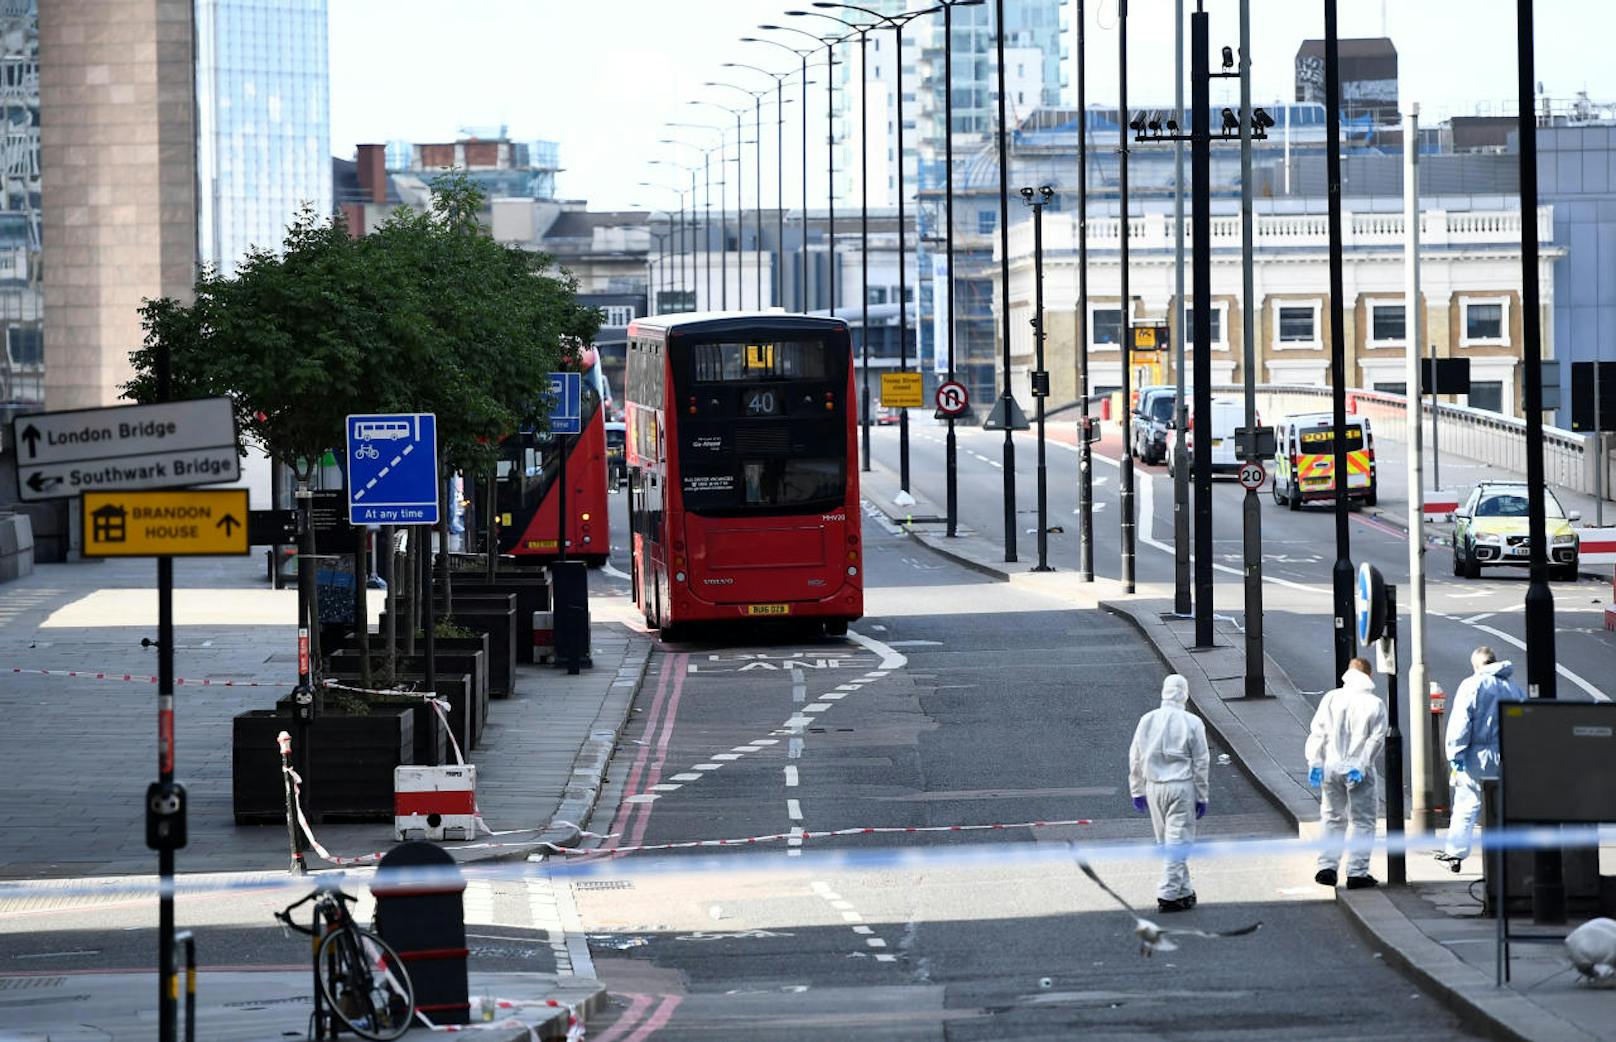 Am Tag nach dem Anschlag: Bewaffnete Polizisten patrouillieren in der Londoner Innenstadt. Der Anschlagsort ist noch abgesperrt, Forensiker ermitteln.